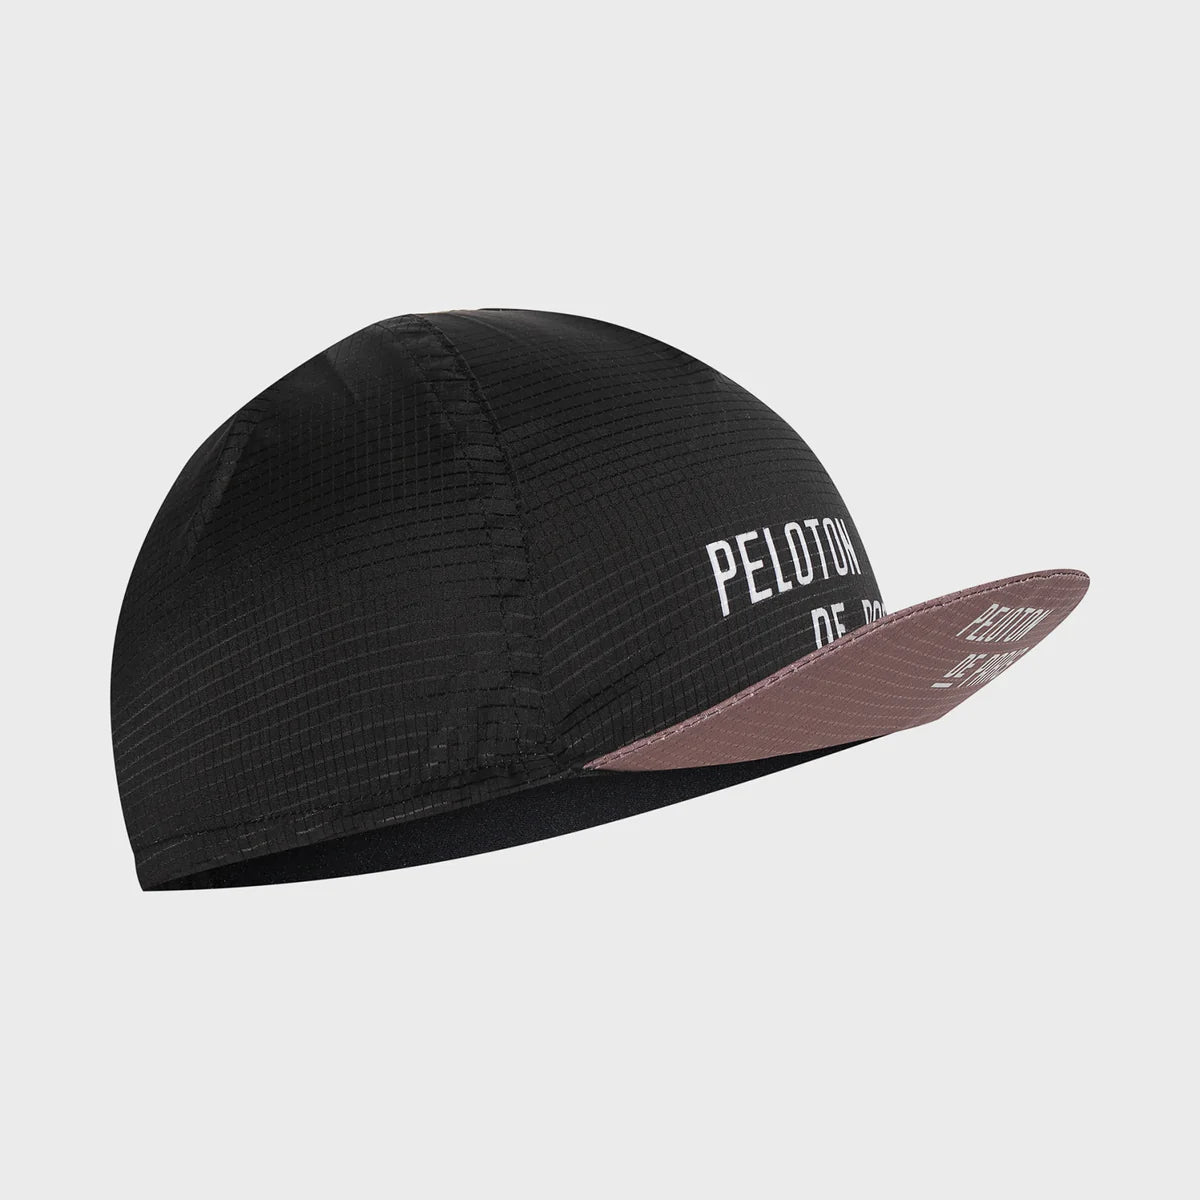 Peloton Cycling Cap - Black